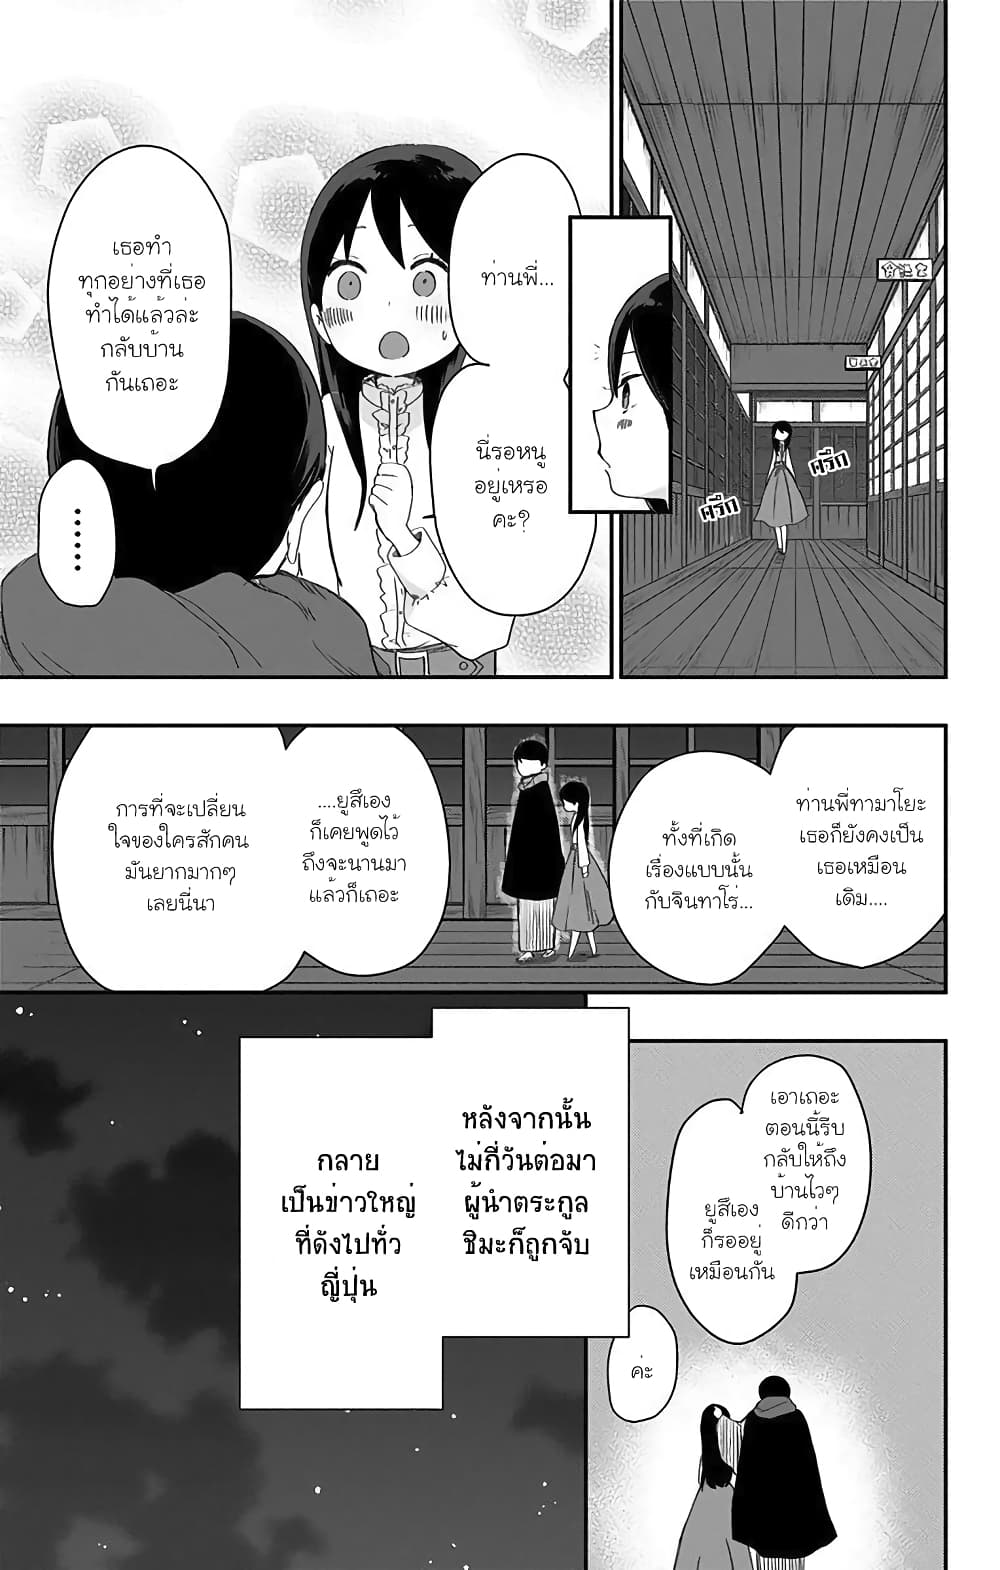 Shouwa Otome Otogibanashi เรื่องเล่าของสาวน้อย ยุคโชวะ ตอนที่ 24 (15)